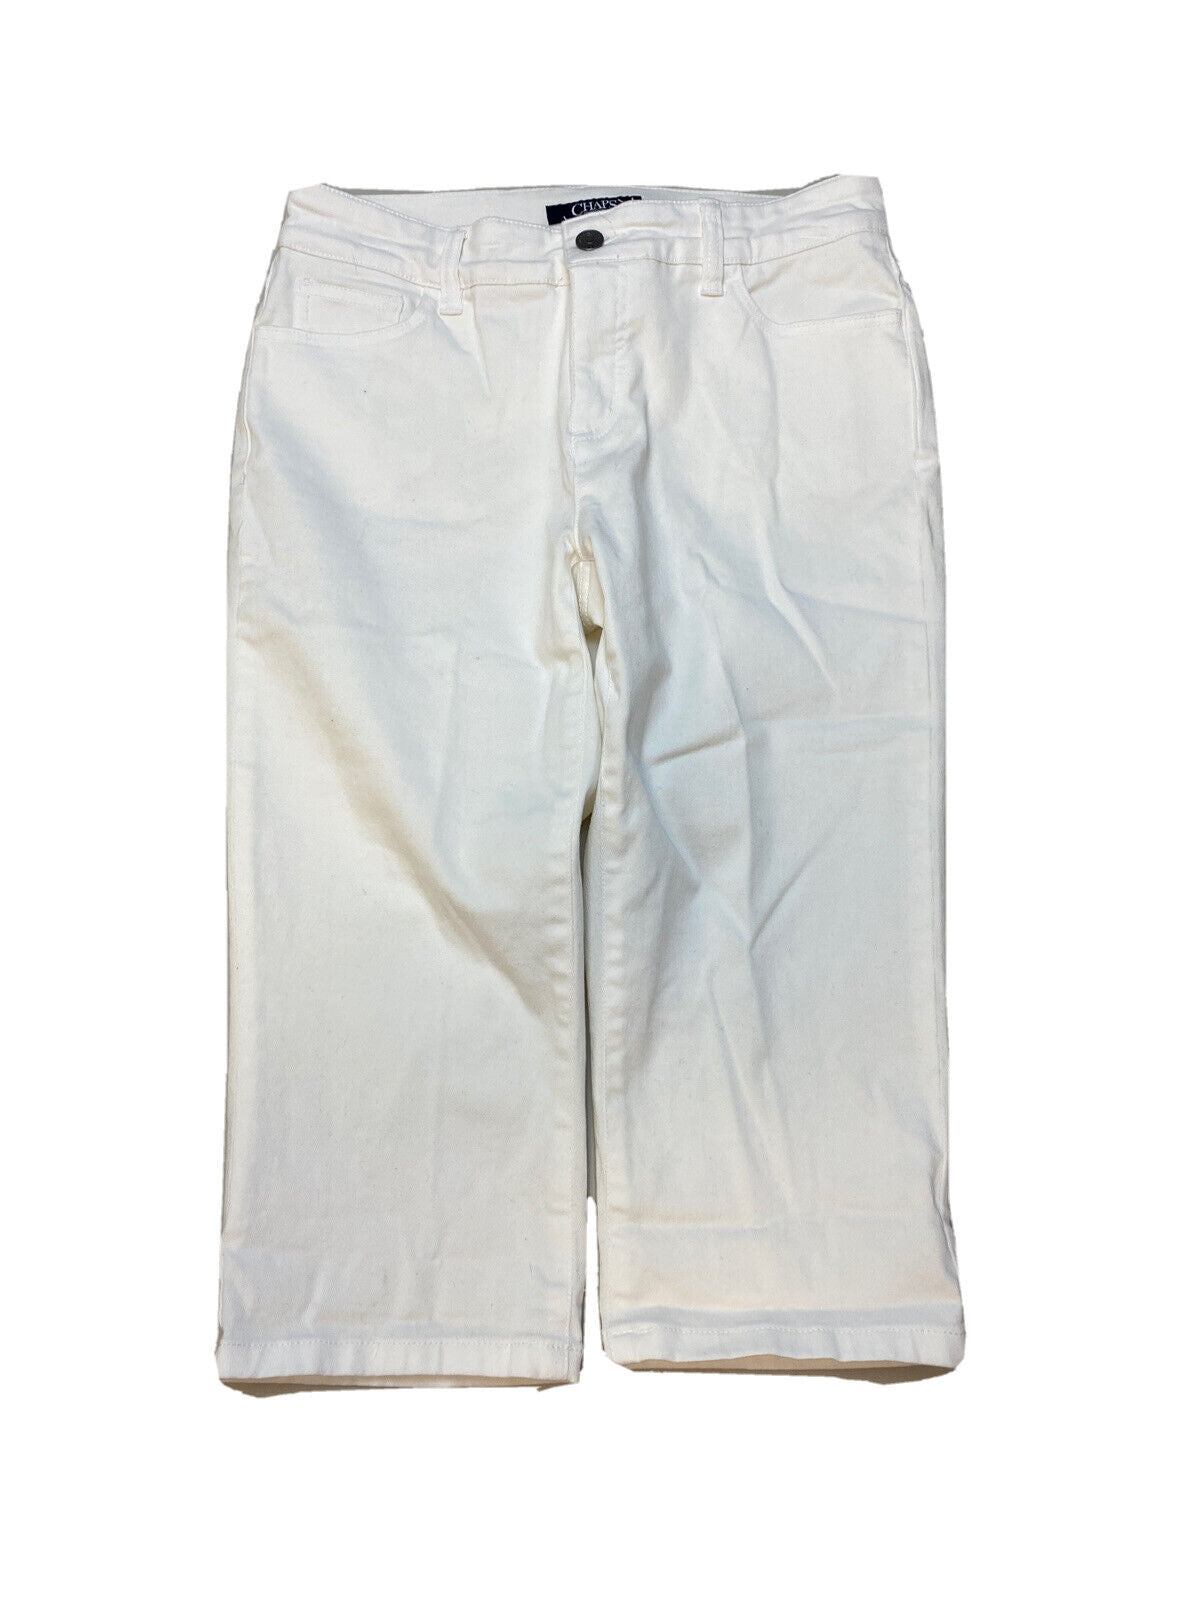 NUEVOS pantalones vaqueros recortados elásticos blancos Chaps para mujer, talla 4